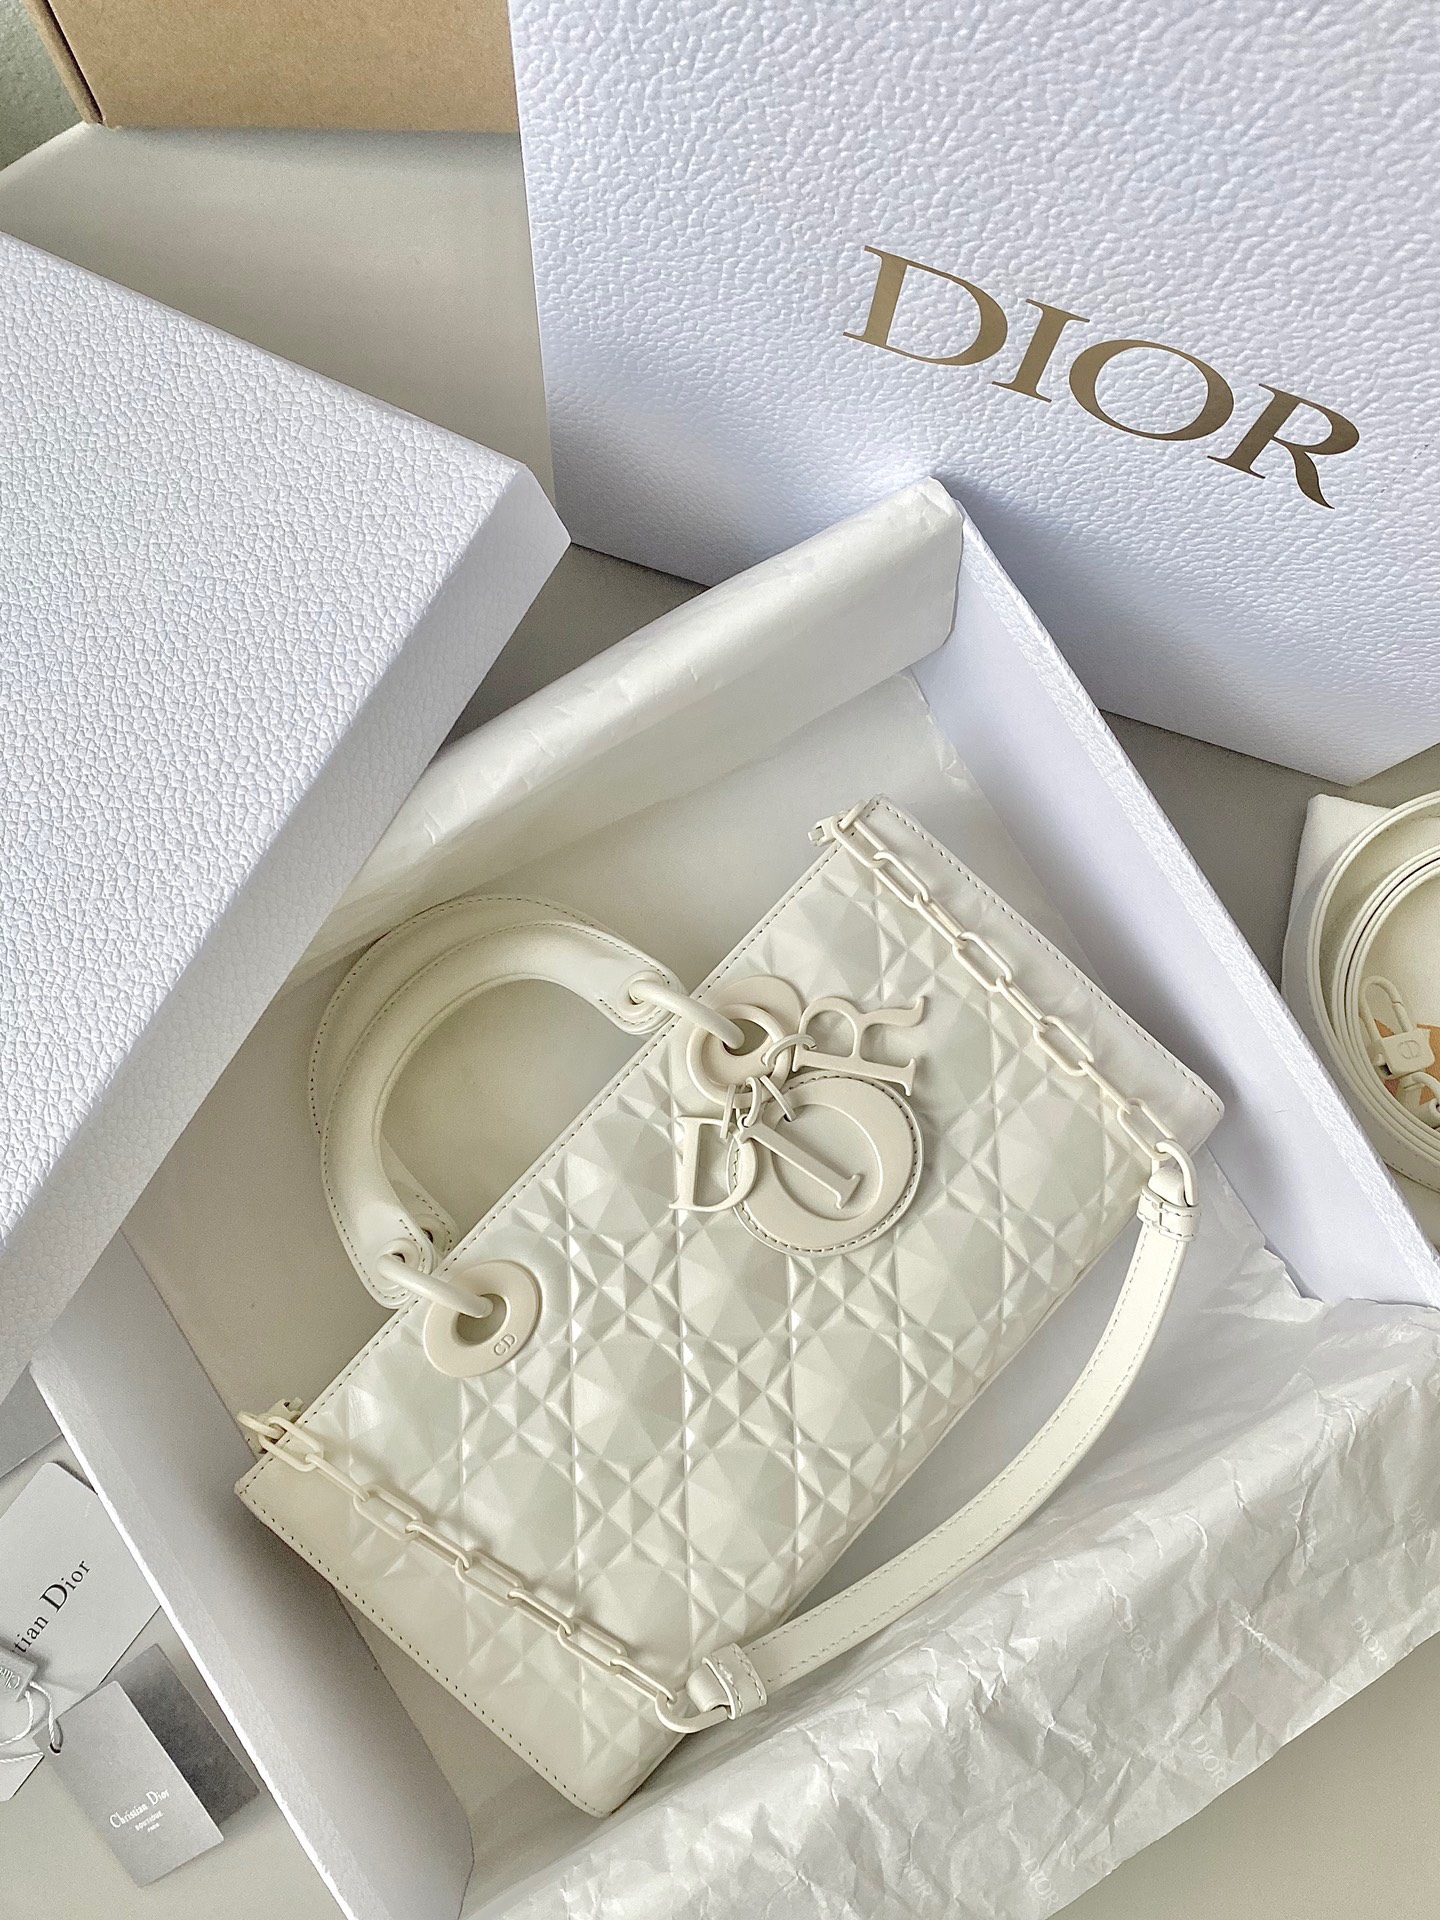 ORDER Dior Lady DJoy